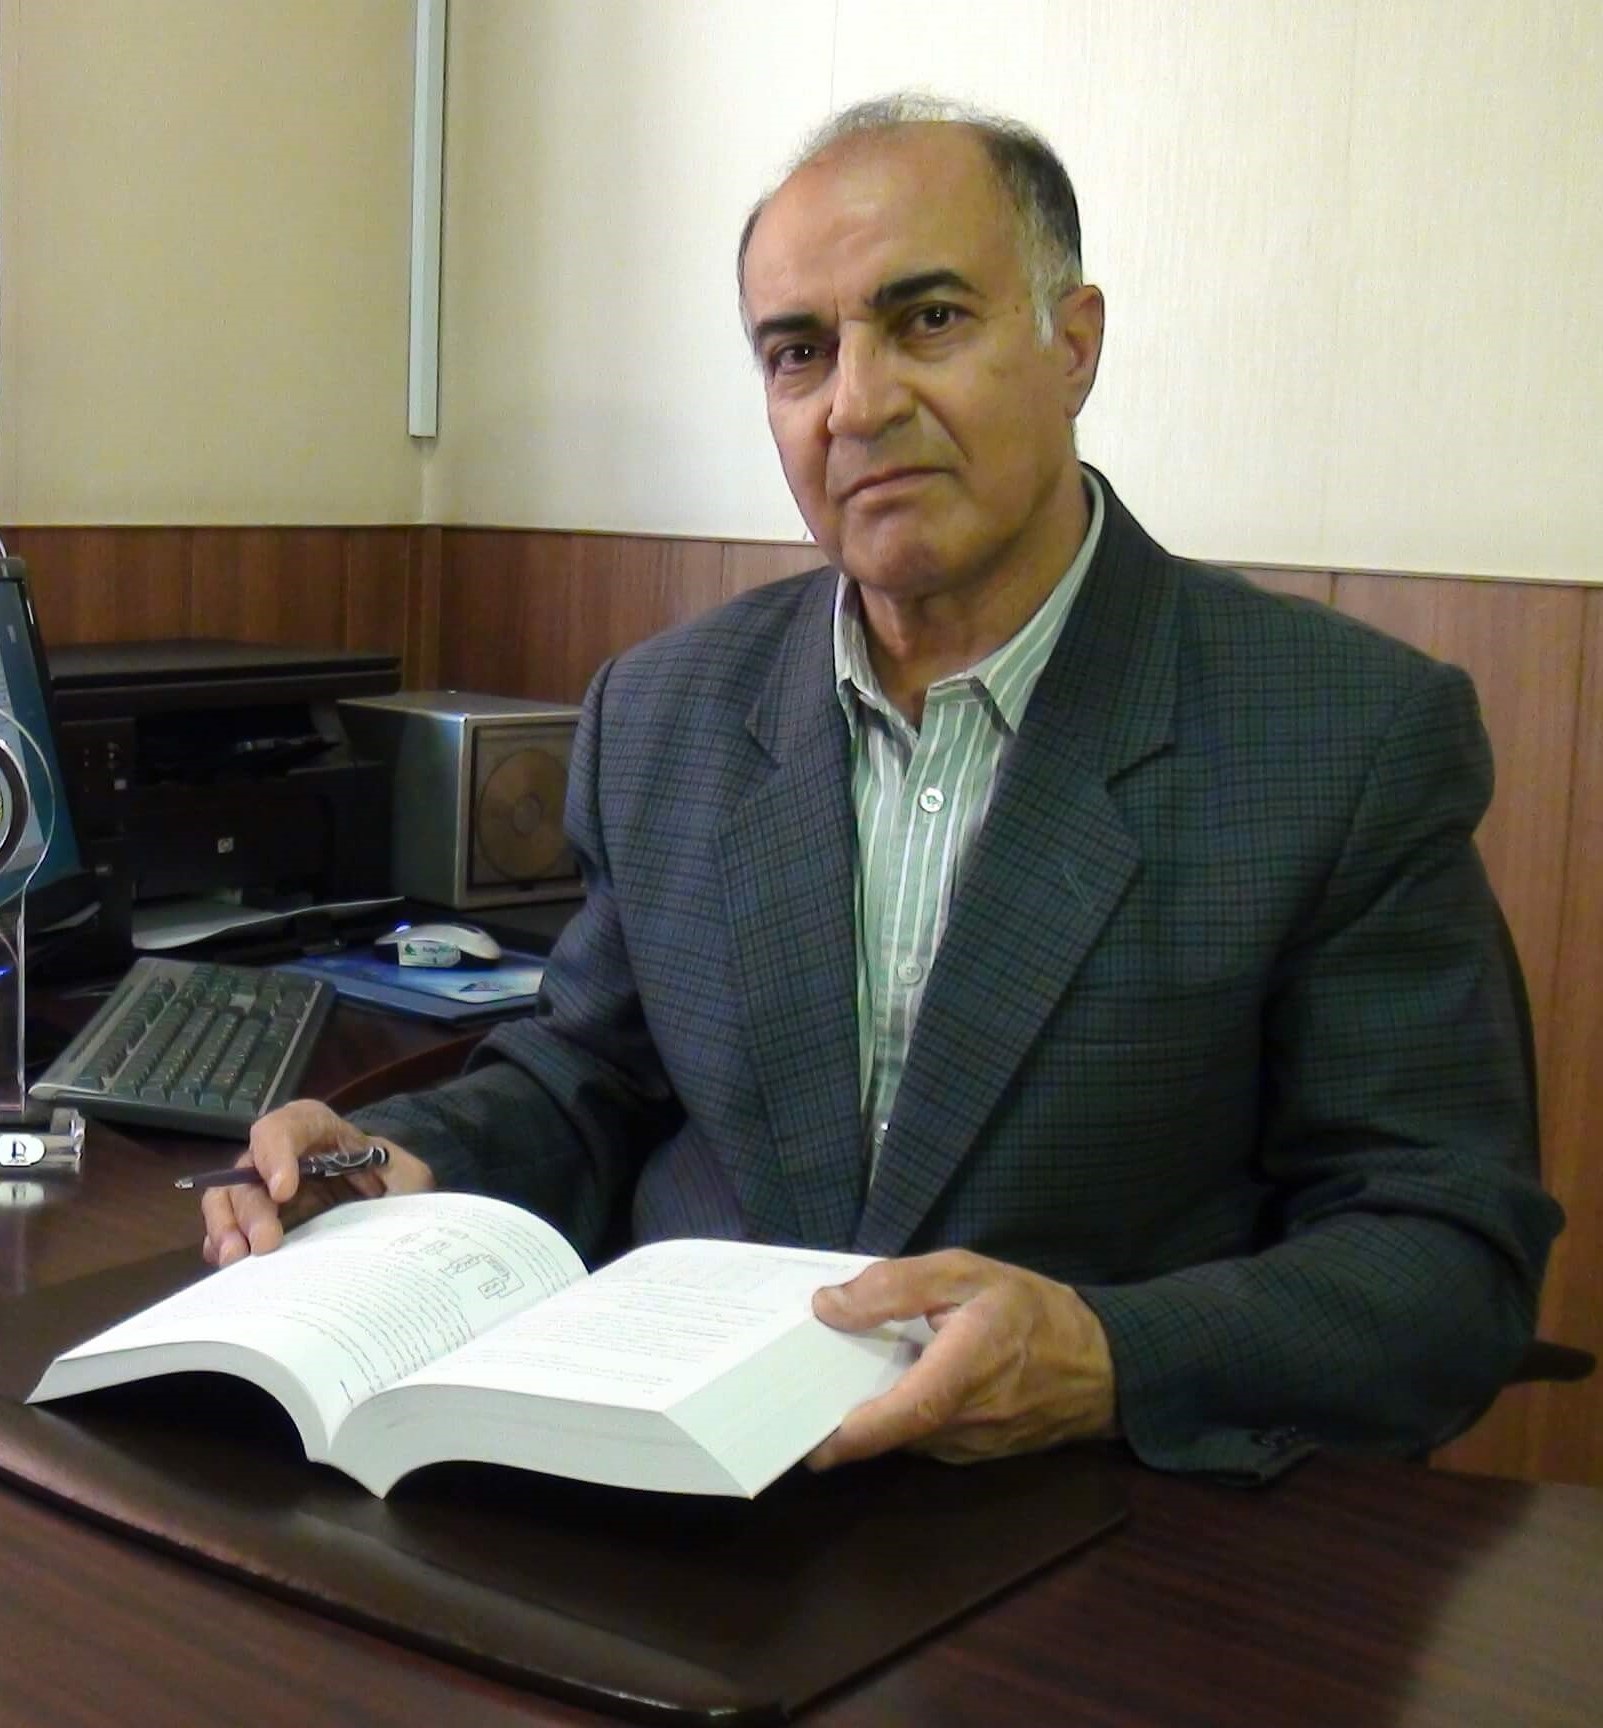 Prof. Ali Haerian Ardakani